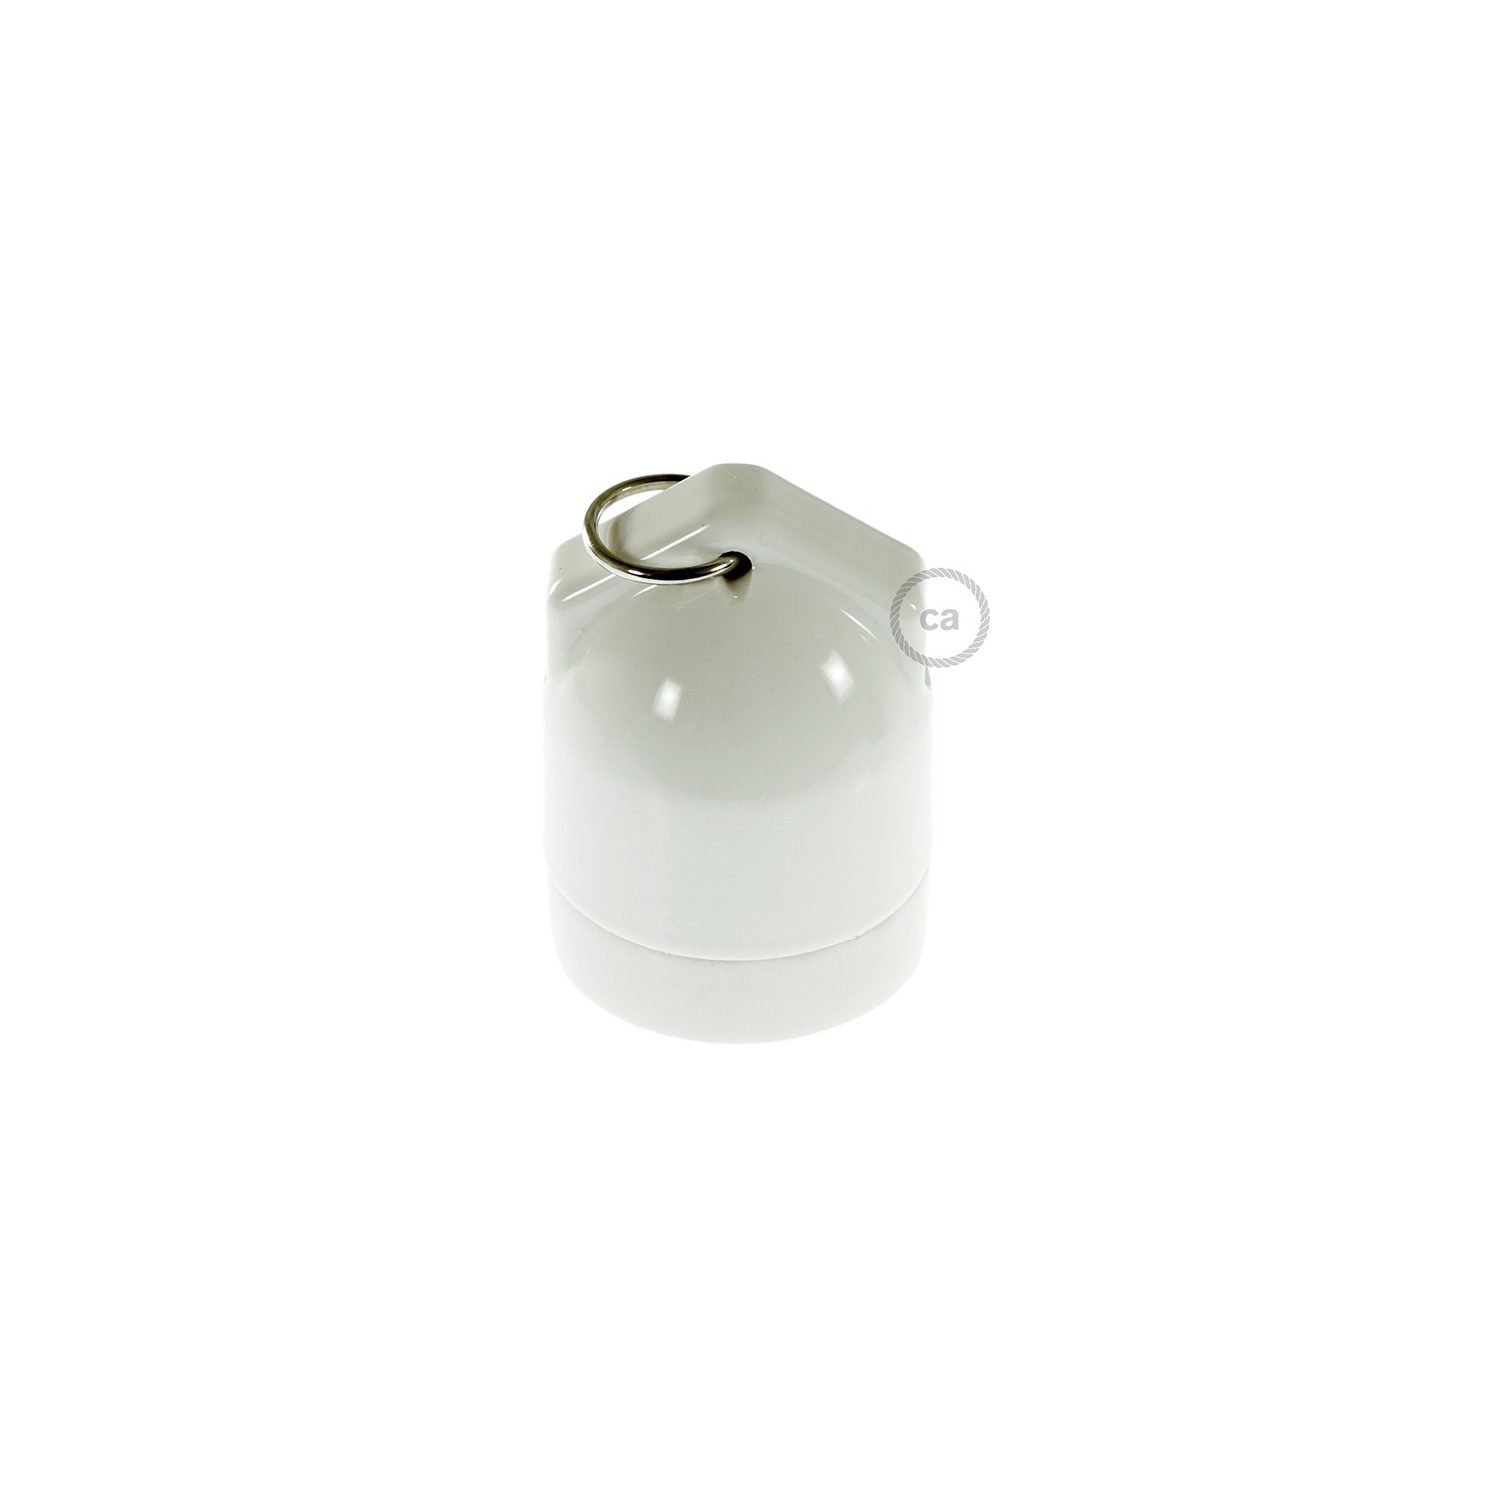 Double entry porcelain E27 lamp holder kit